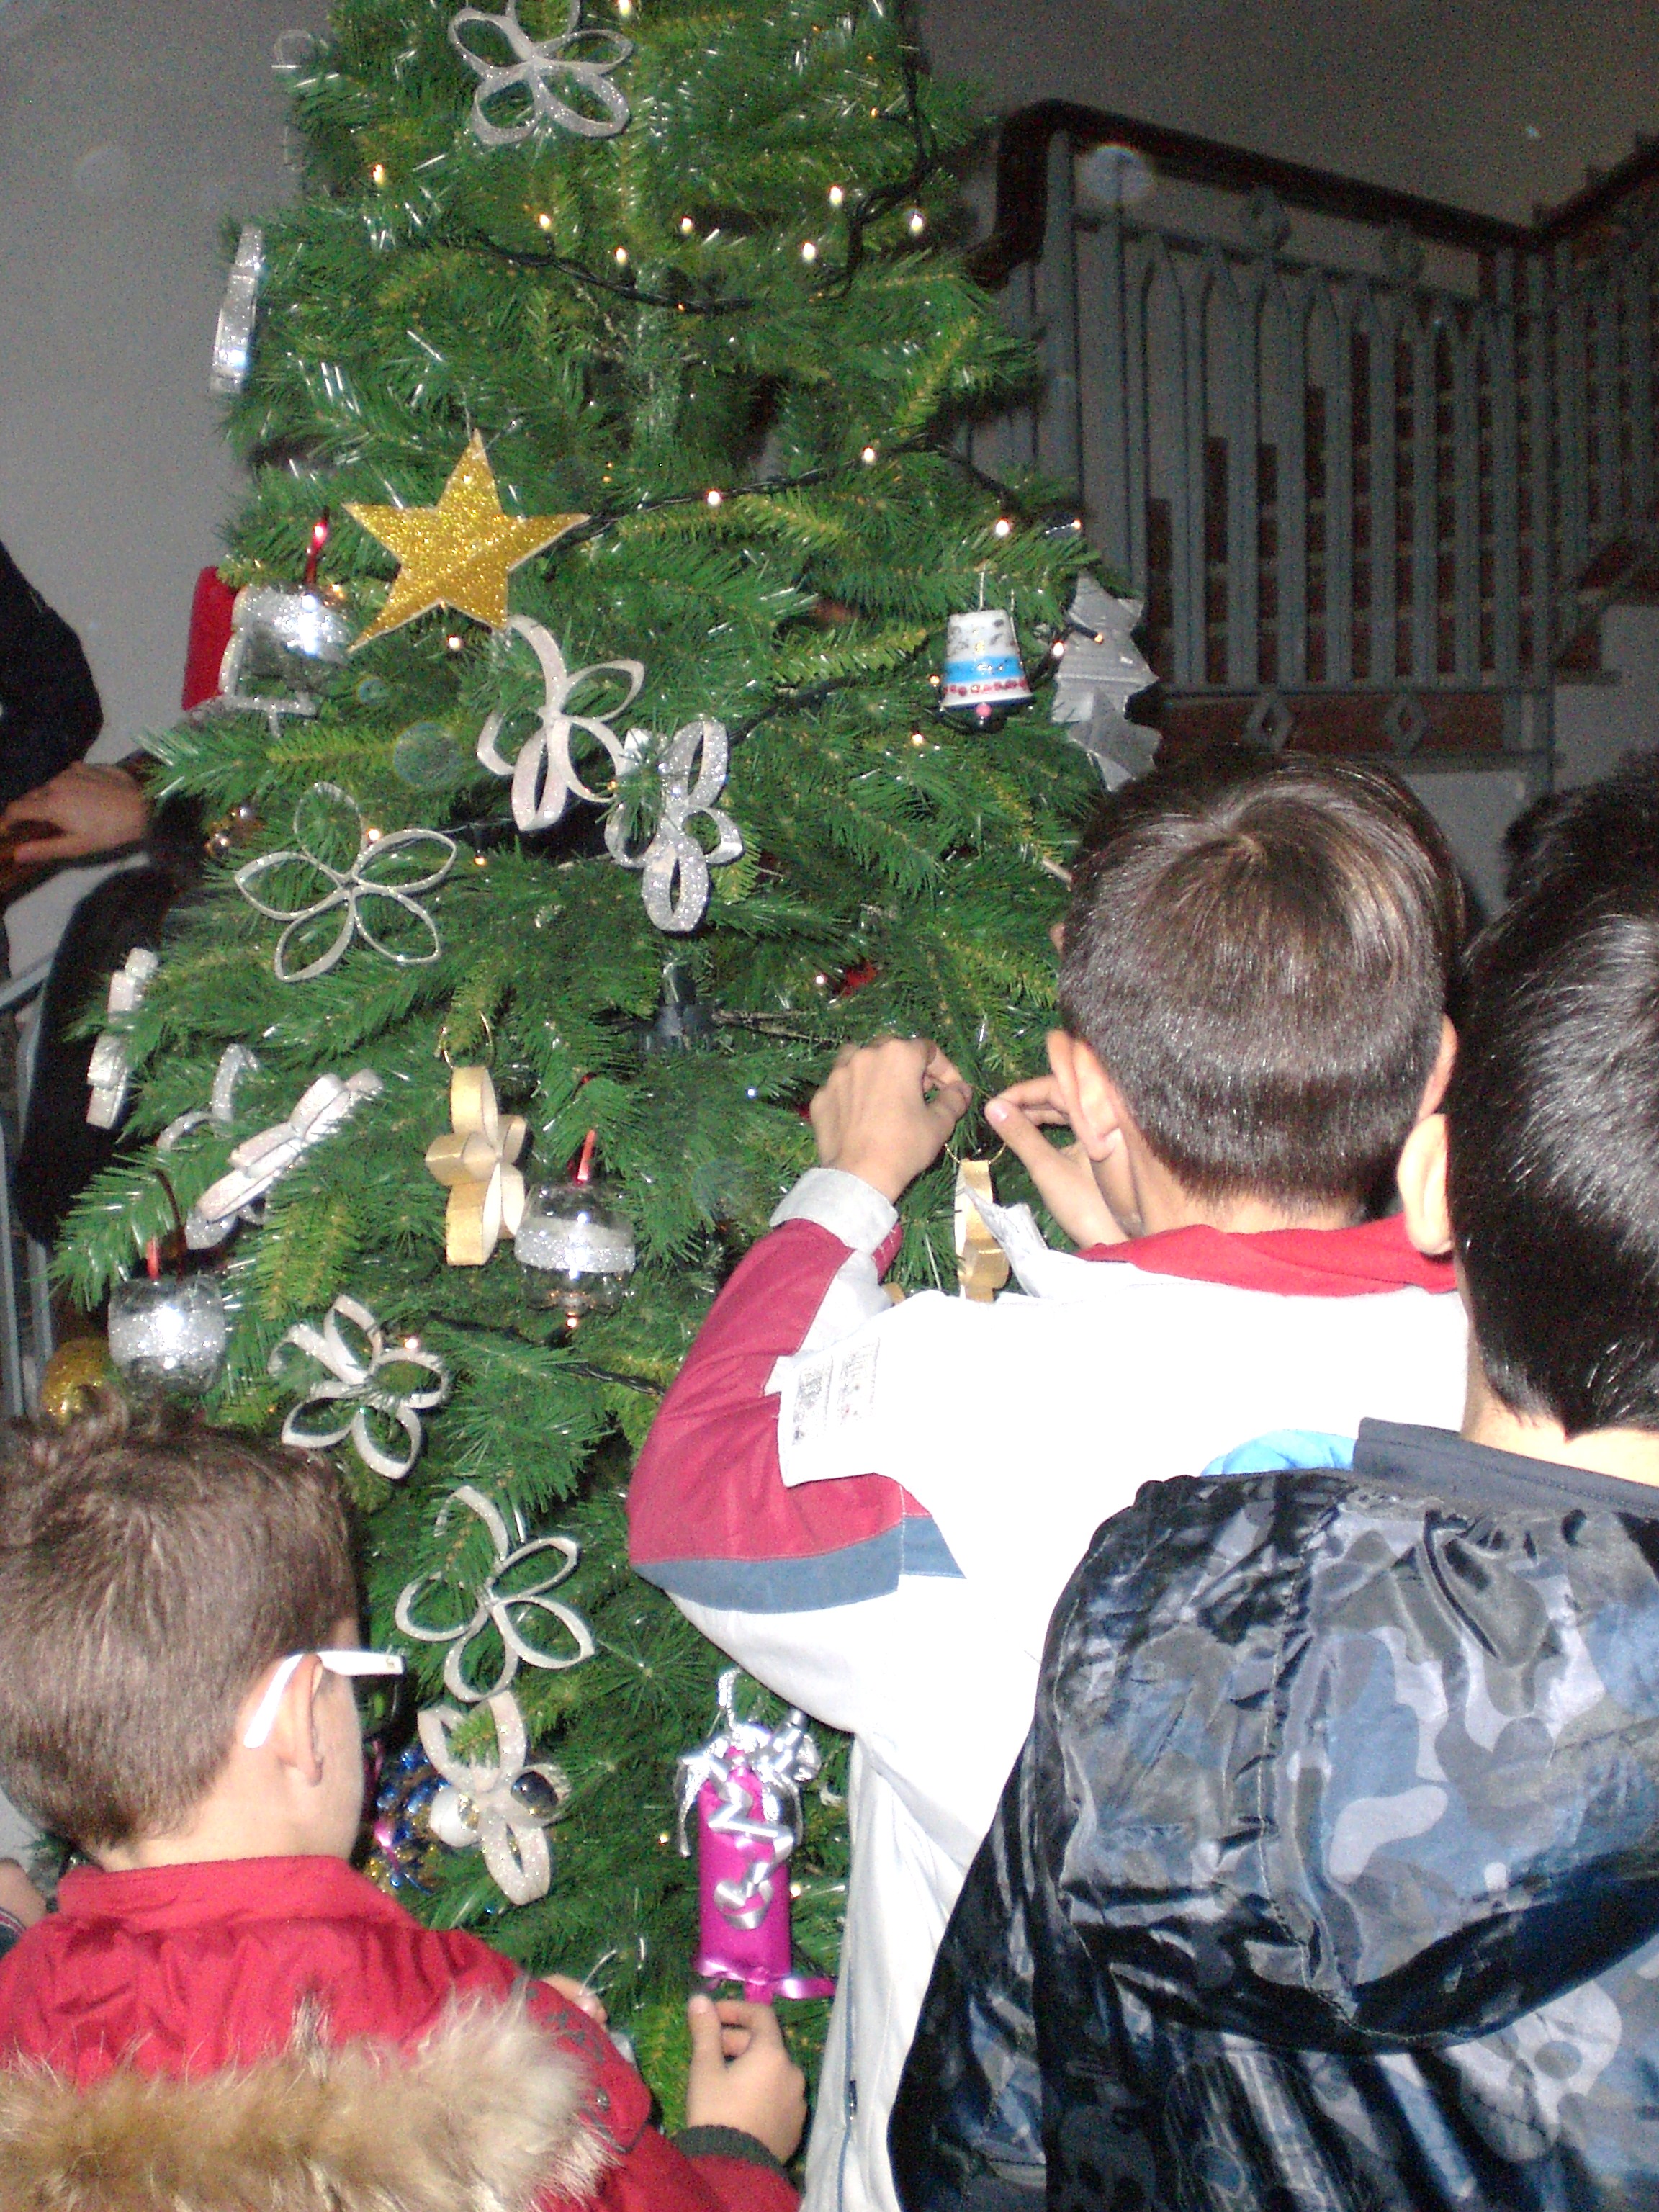 L’Albero del riciclo e cristiani e musulmani insieme in occasione del Natale